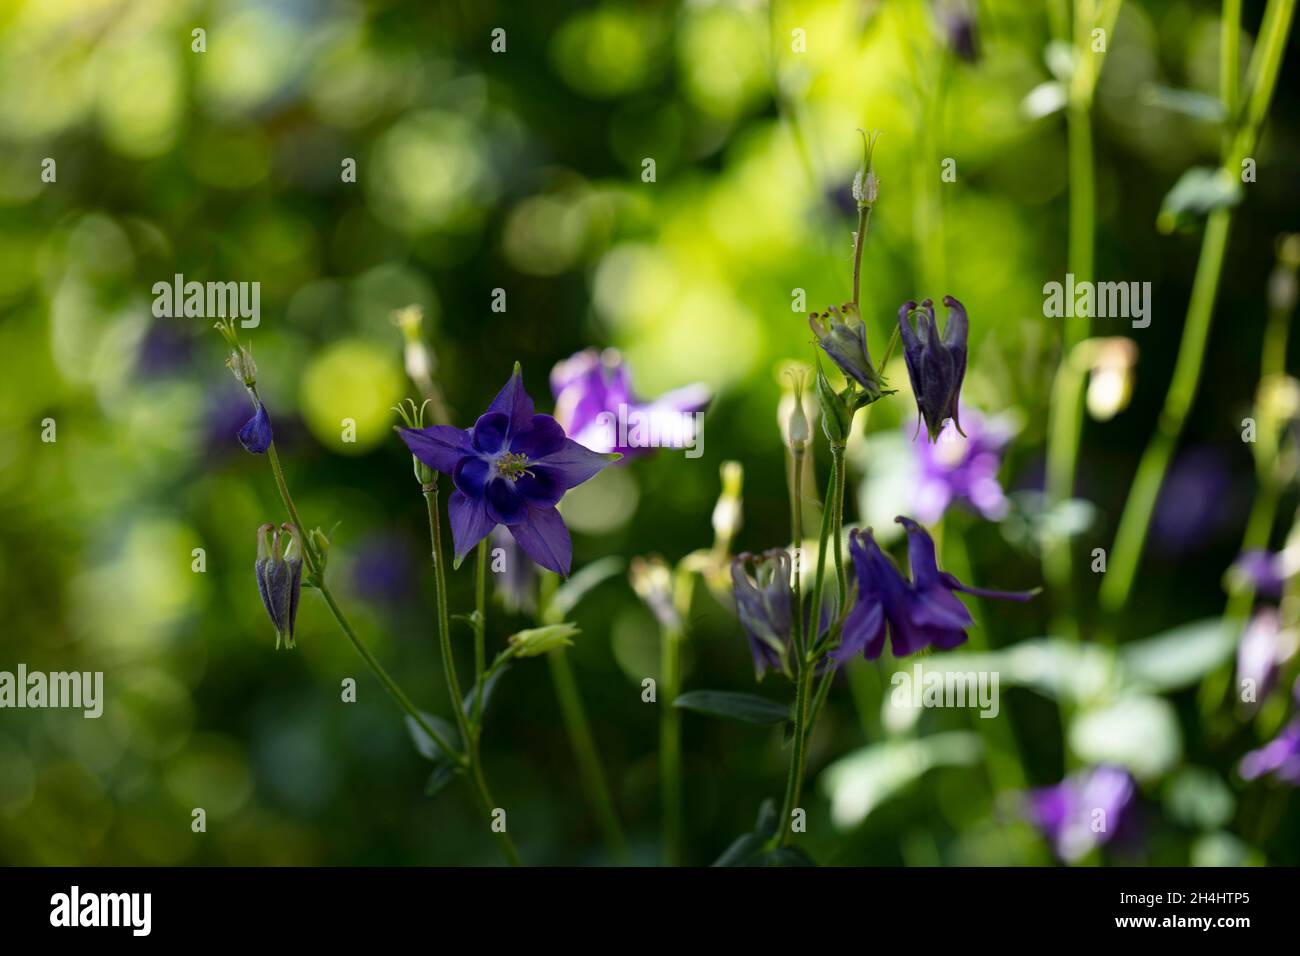 Kurzspornige Akelei (Aquilegia vulgaris), lila / blauviolette Blüten der Akelei, in einem Garten in NRW, Deutschland. Stock Photo